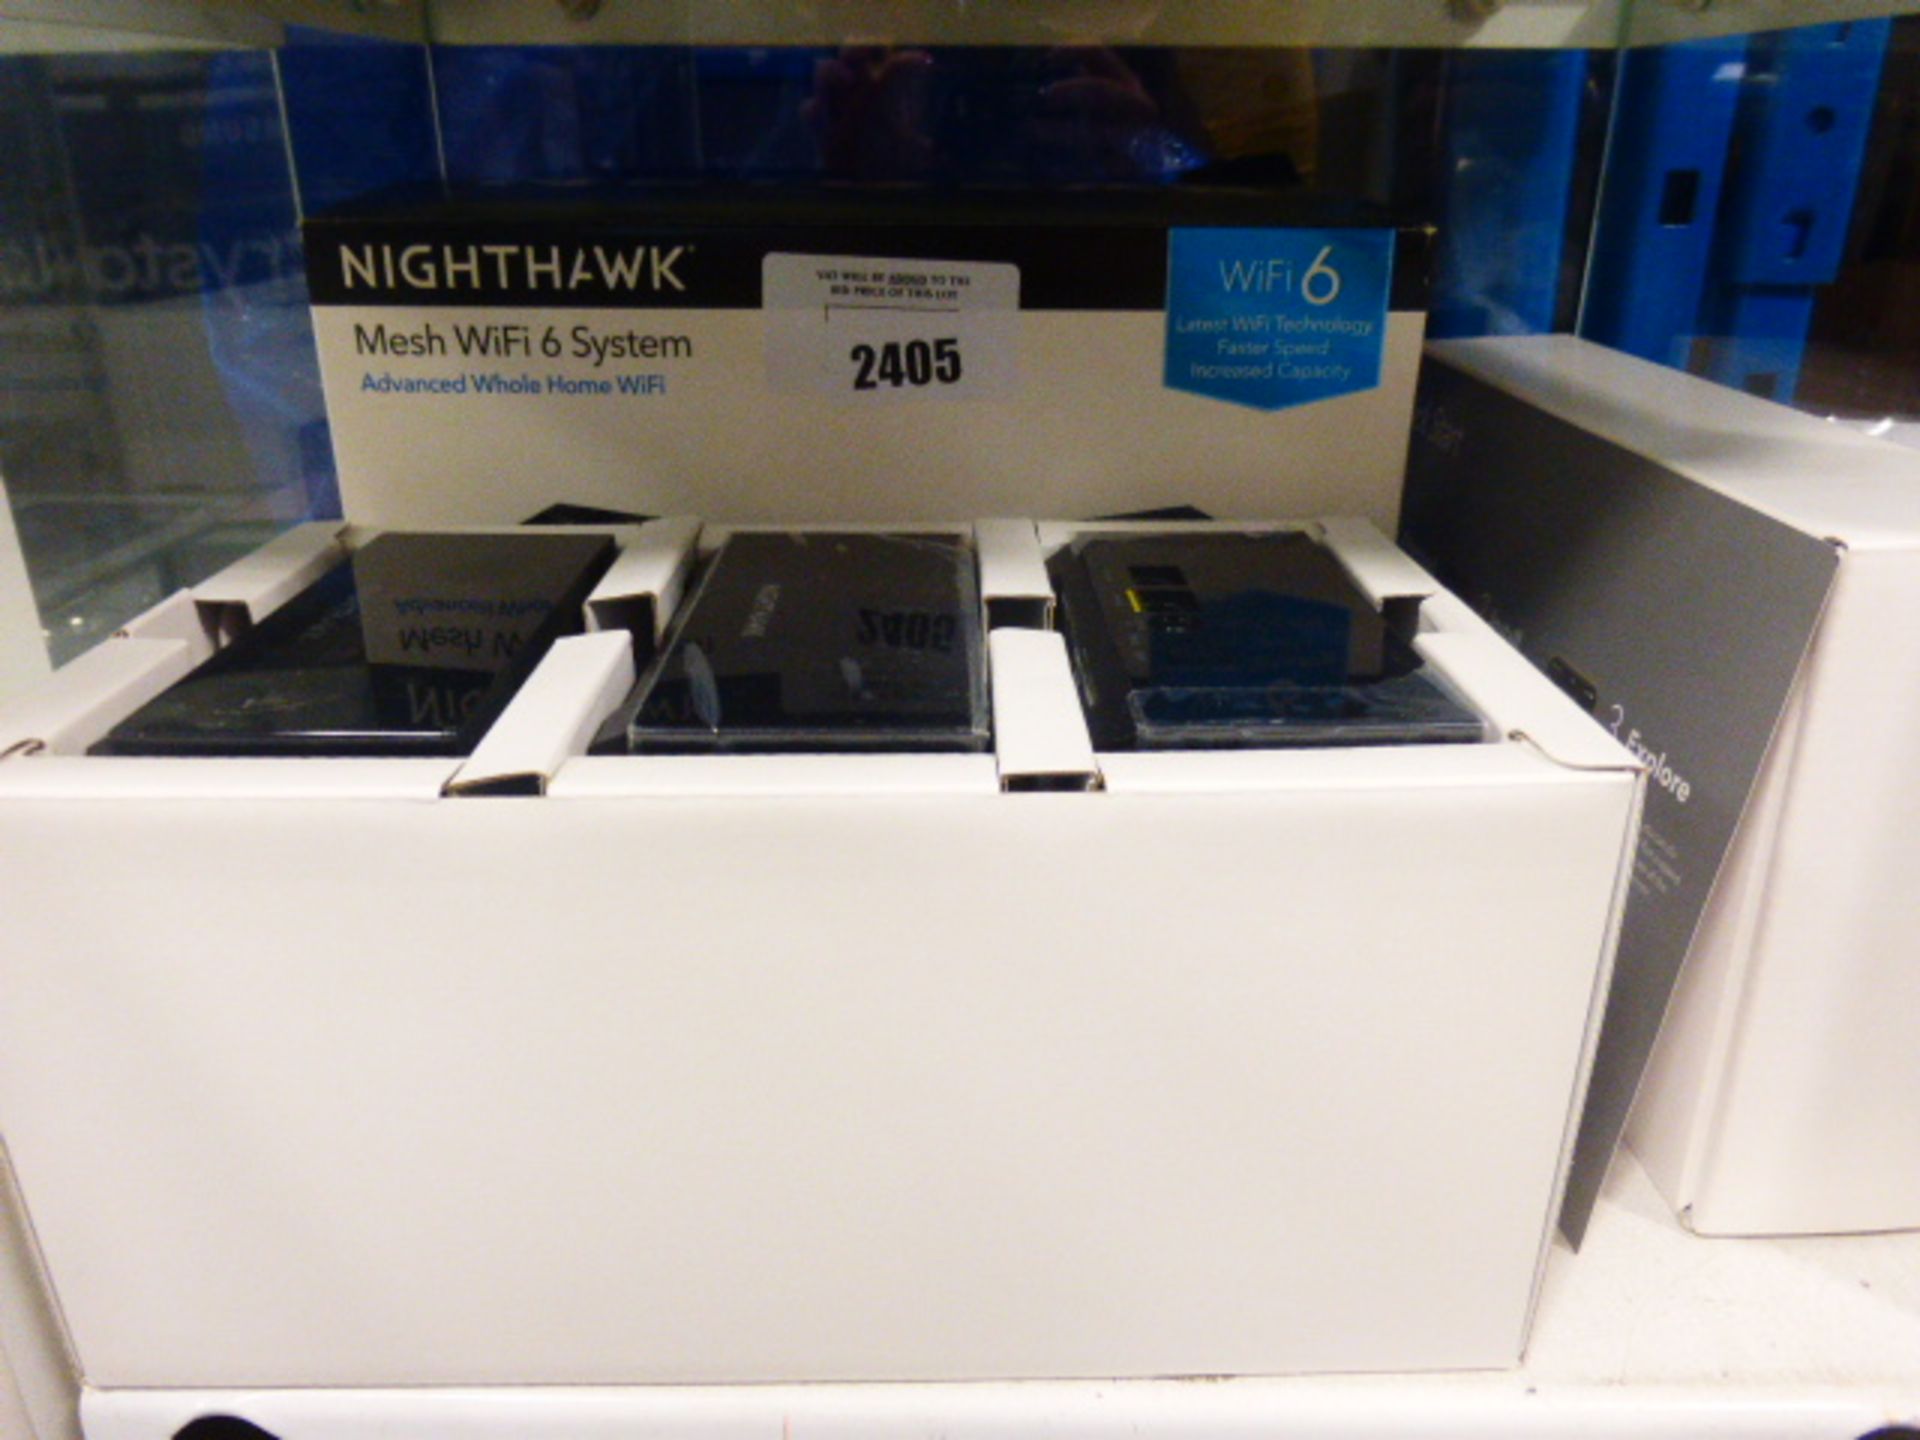 Netgear Nighthawk mesh wifi 6 system with box